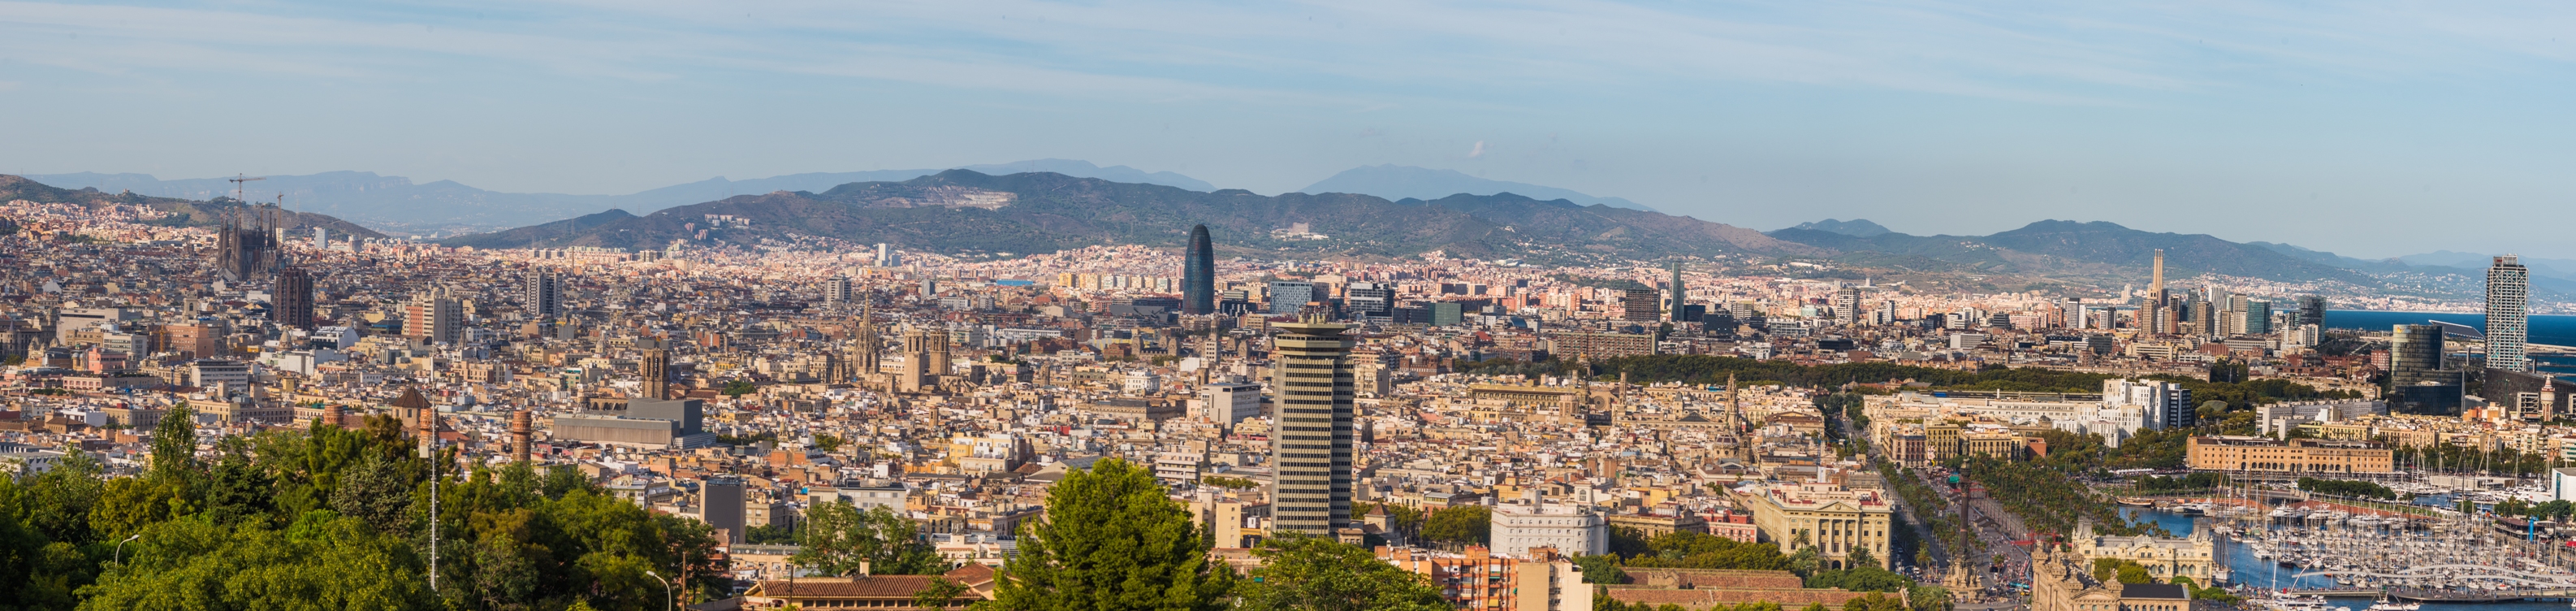 O alta panorama asupra altei parti din Barcelona. Cum dealul este destul de povarnit si aleile sinuoase, veti gasi destule locuri de unde se poate admira orasul.